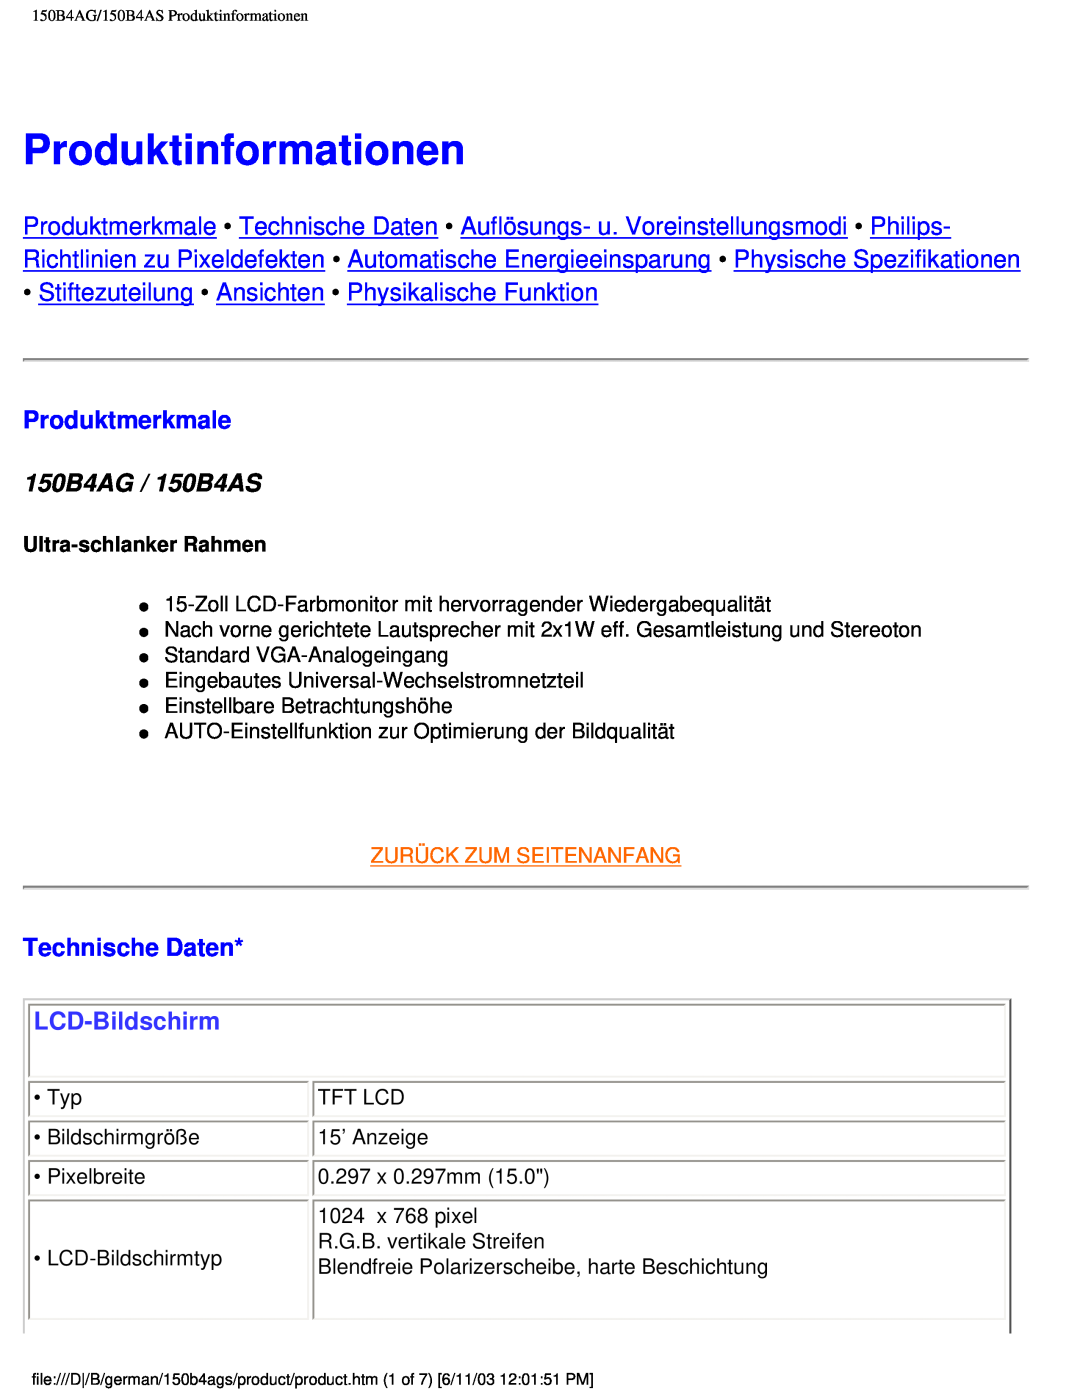 Philips user manual Produktinformationen, Produktmerkmale, 150B4AG / 150B4AS, Technische Daten, LCD-Bildschirm 